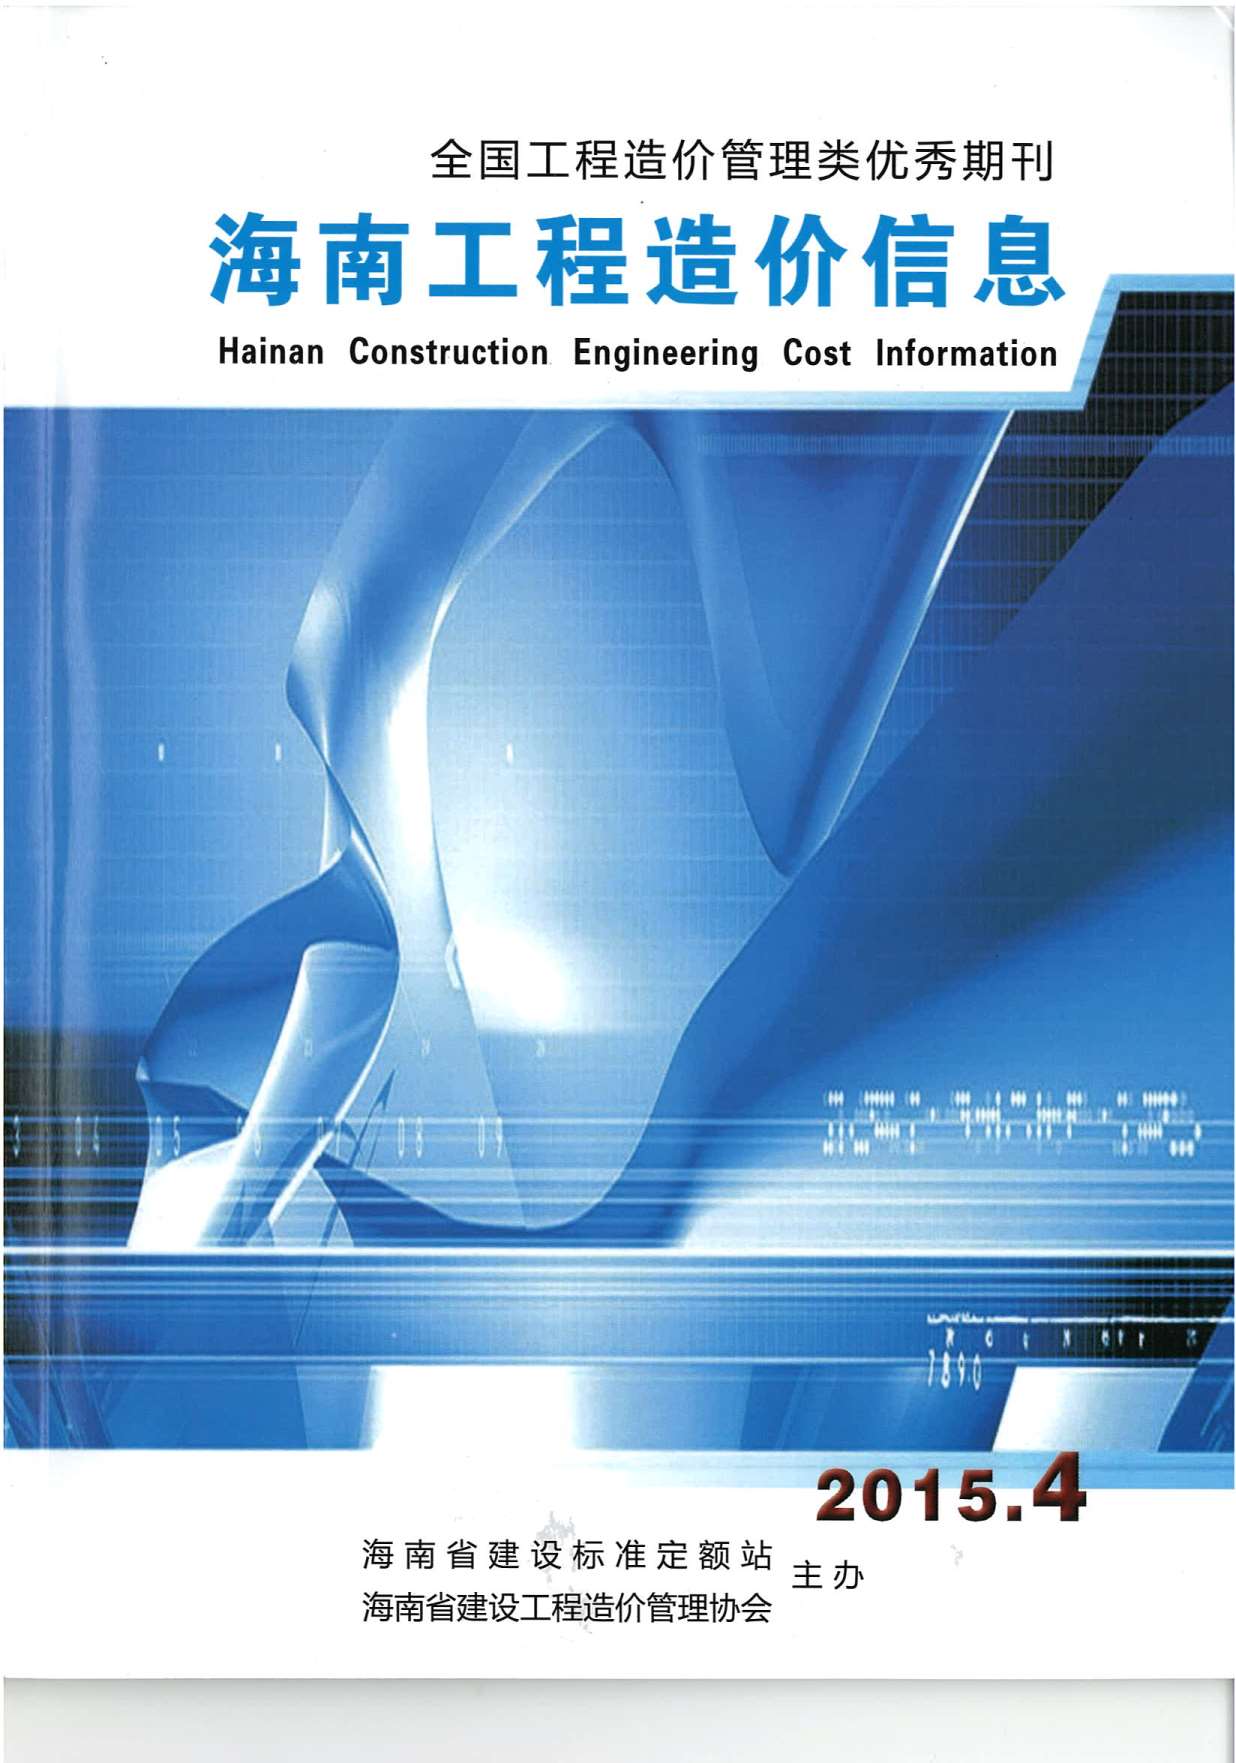 海南省2015年4月材料信息价